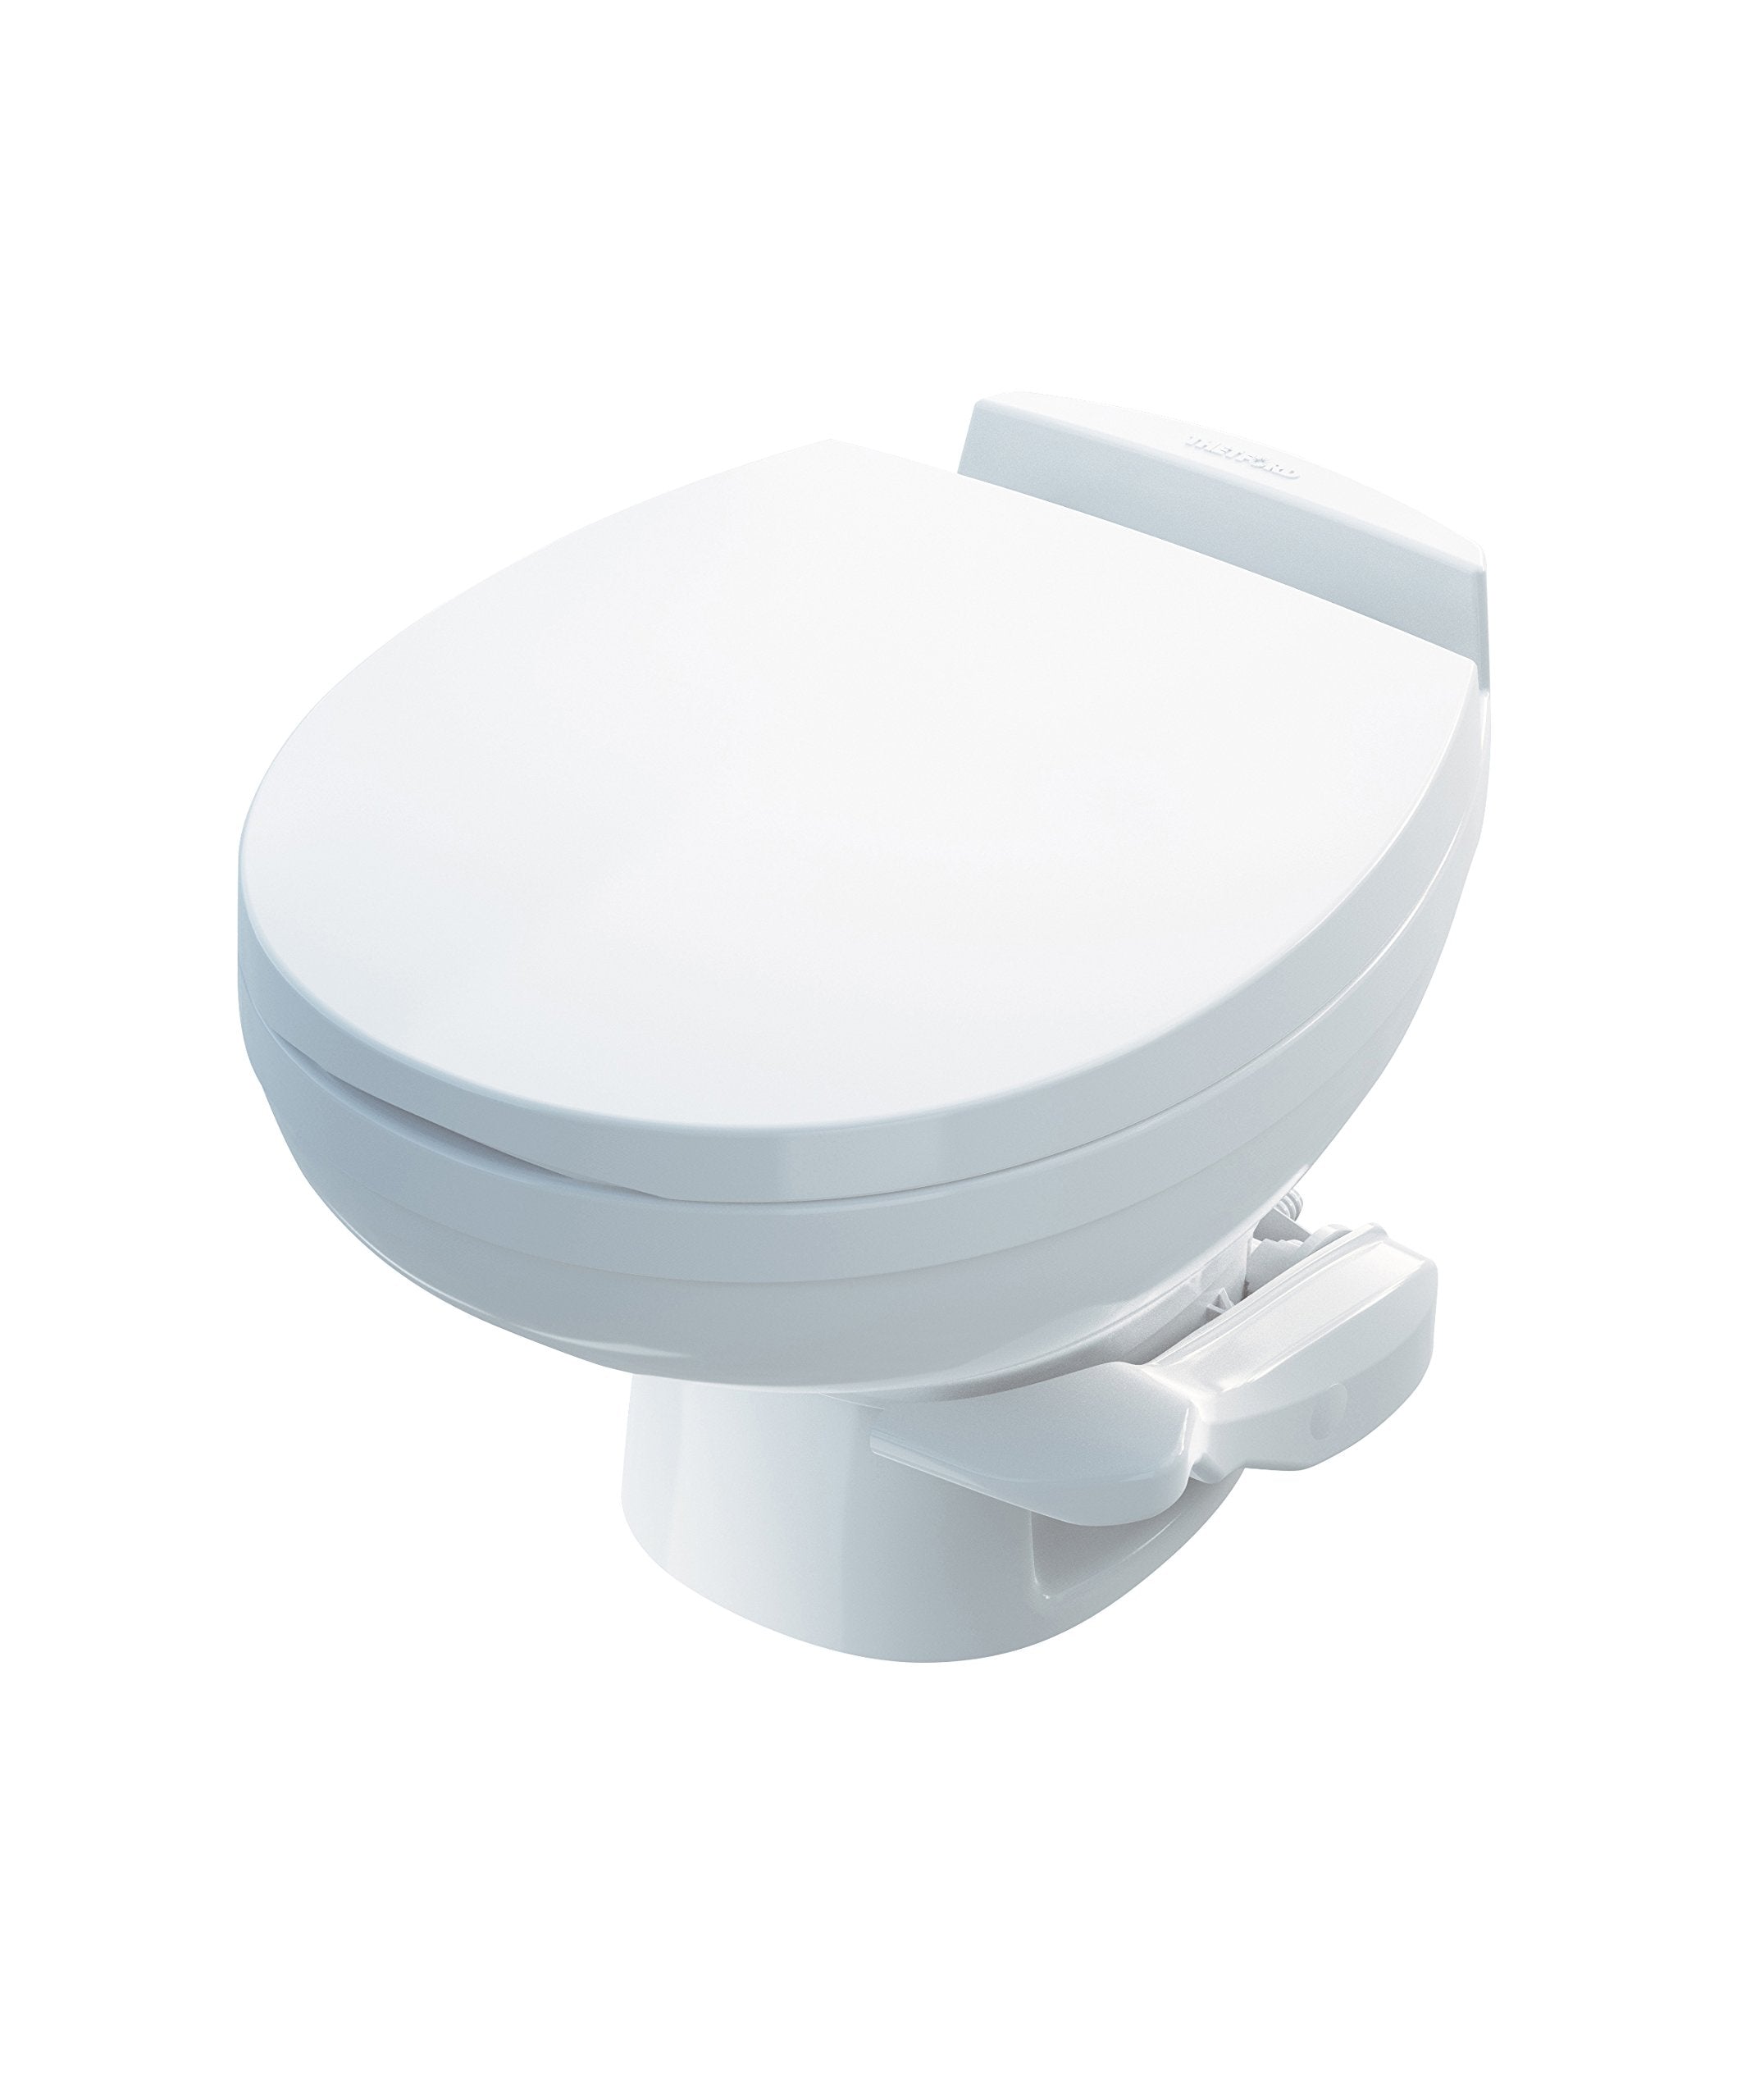 Aqua Magic Residence RV Toilet / Low Profile / White - Thetford 42170